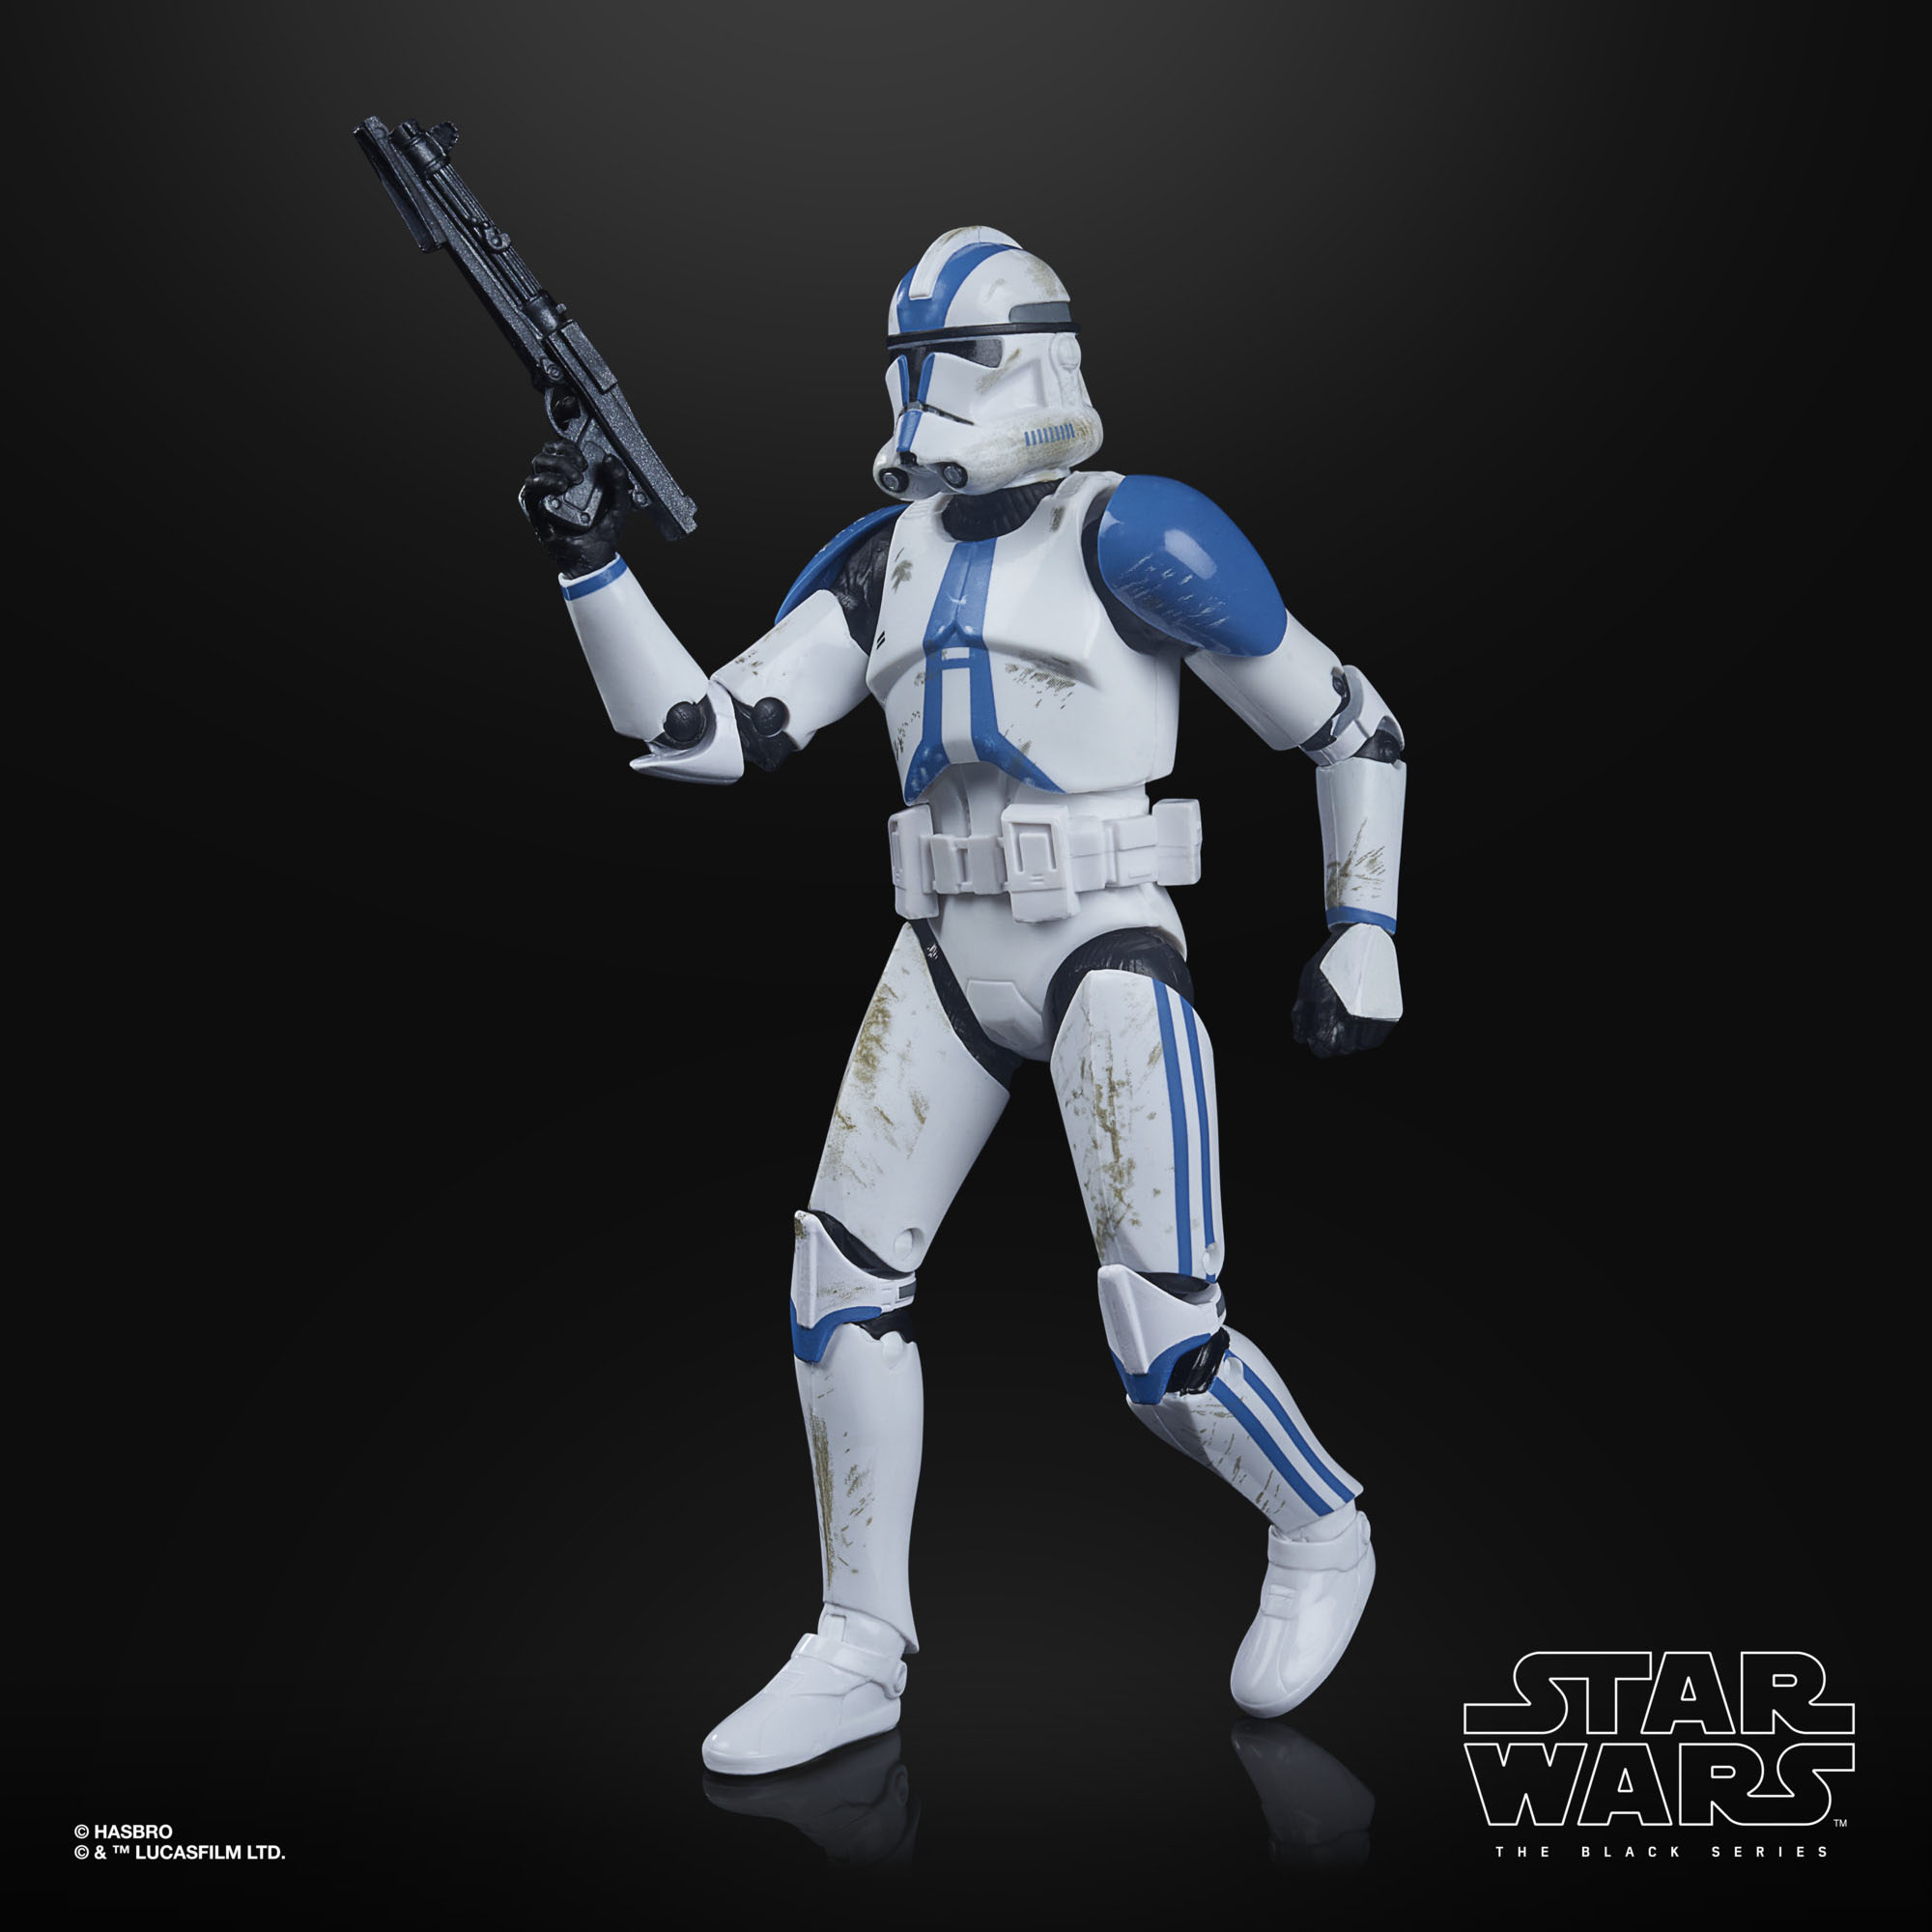 Star Wars The Black Series Archive 501st Legion Clone Trooper F19115X0 5010993831005